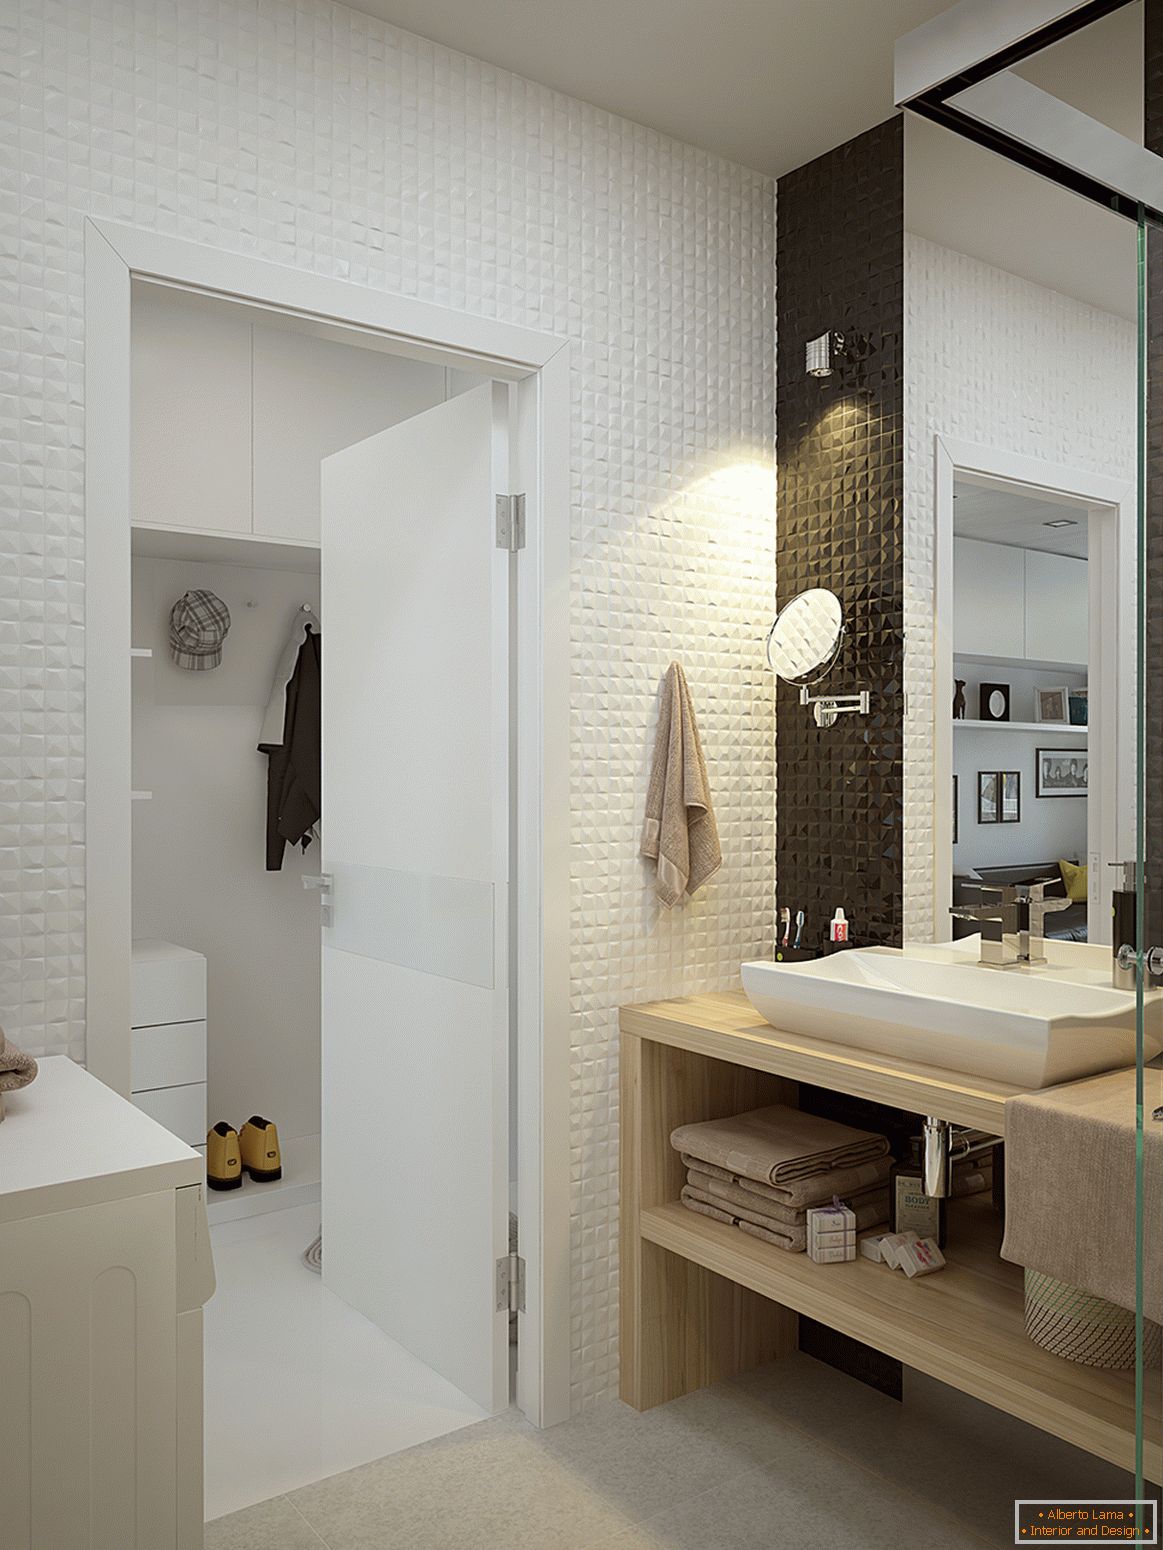 Notranjost majhnega apartmaja v kontrastnih barvah - ванная